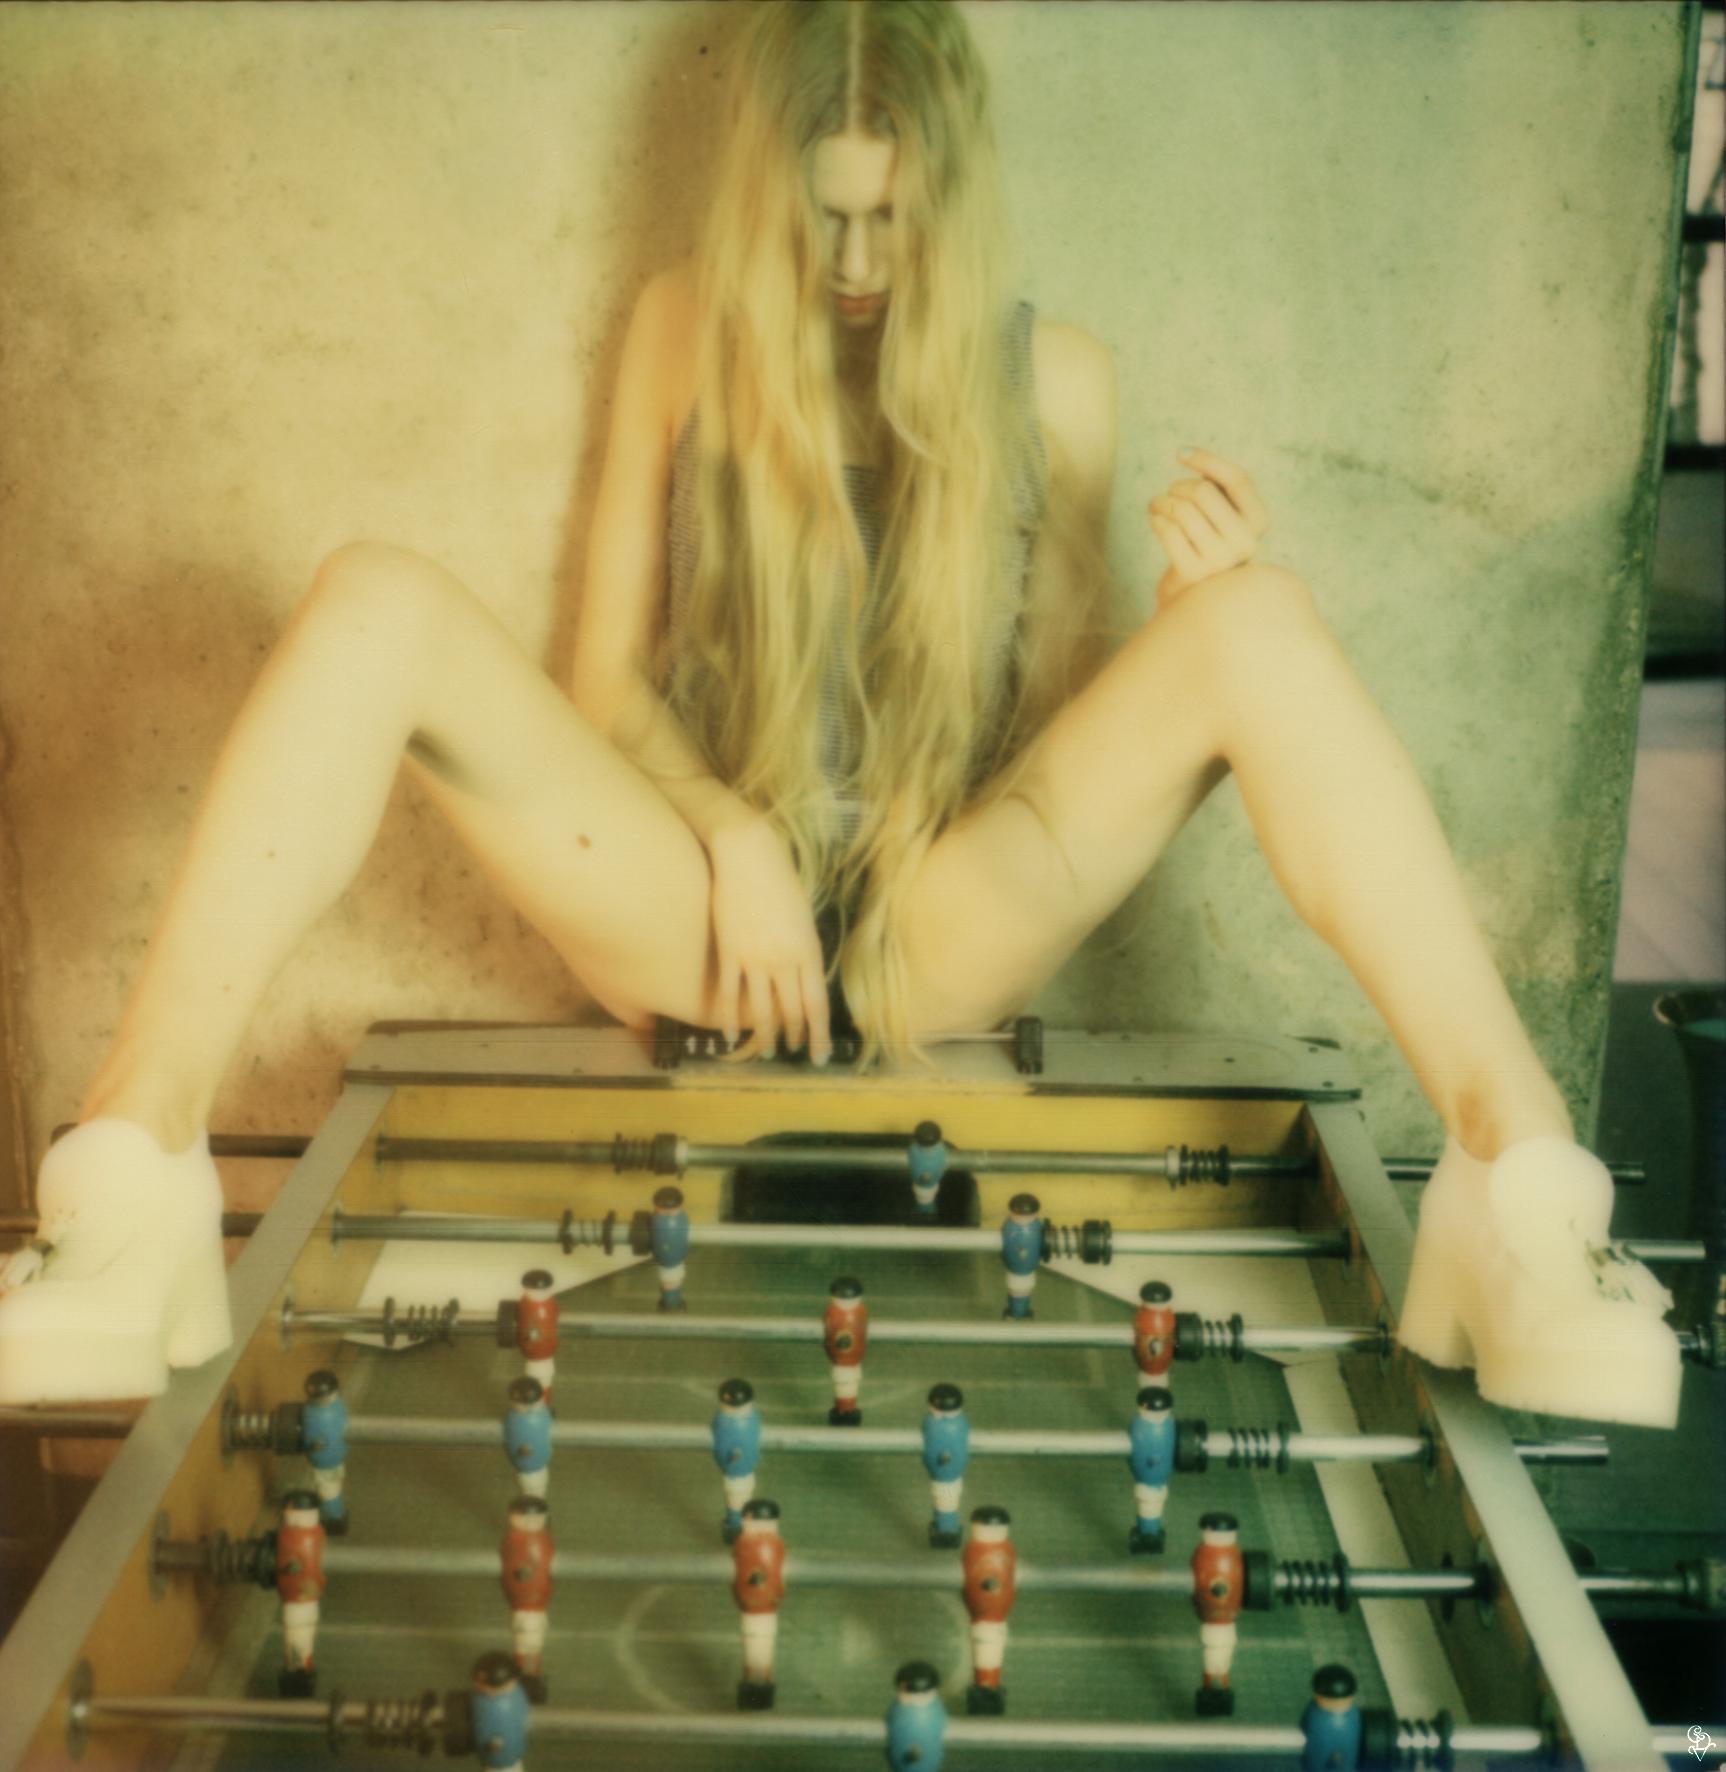 Carmen de Vos Nude Photograph – Kicker - 21. Jahrhundert, Frauen, Zeitgenössisch, Polaroid, figurativ, Nackt